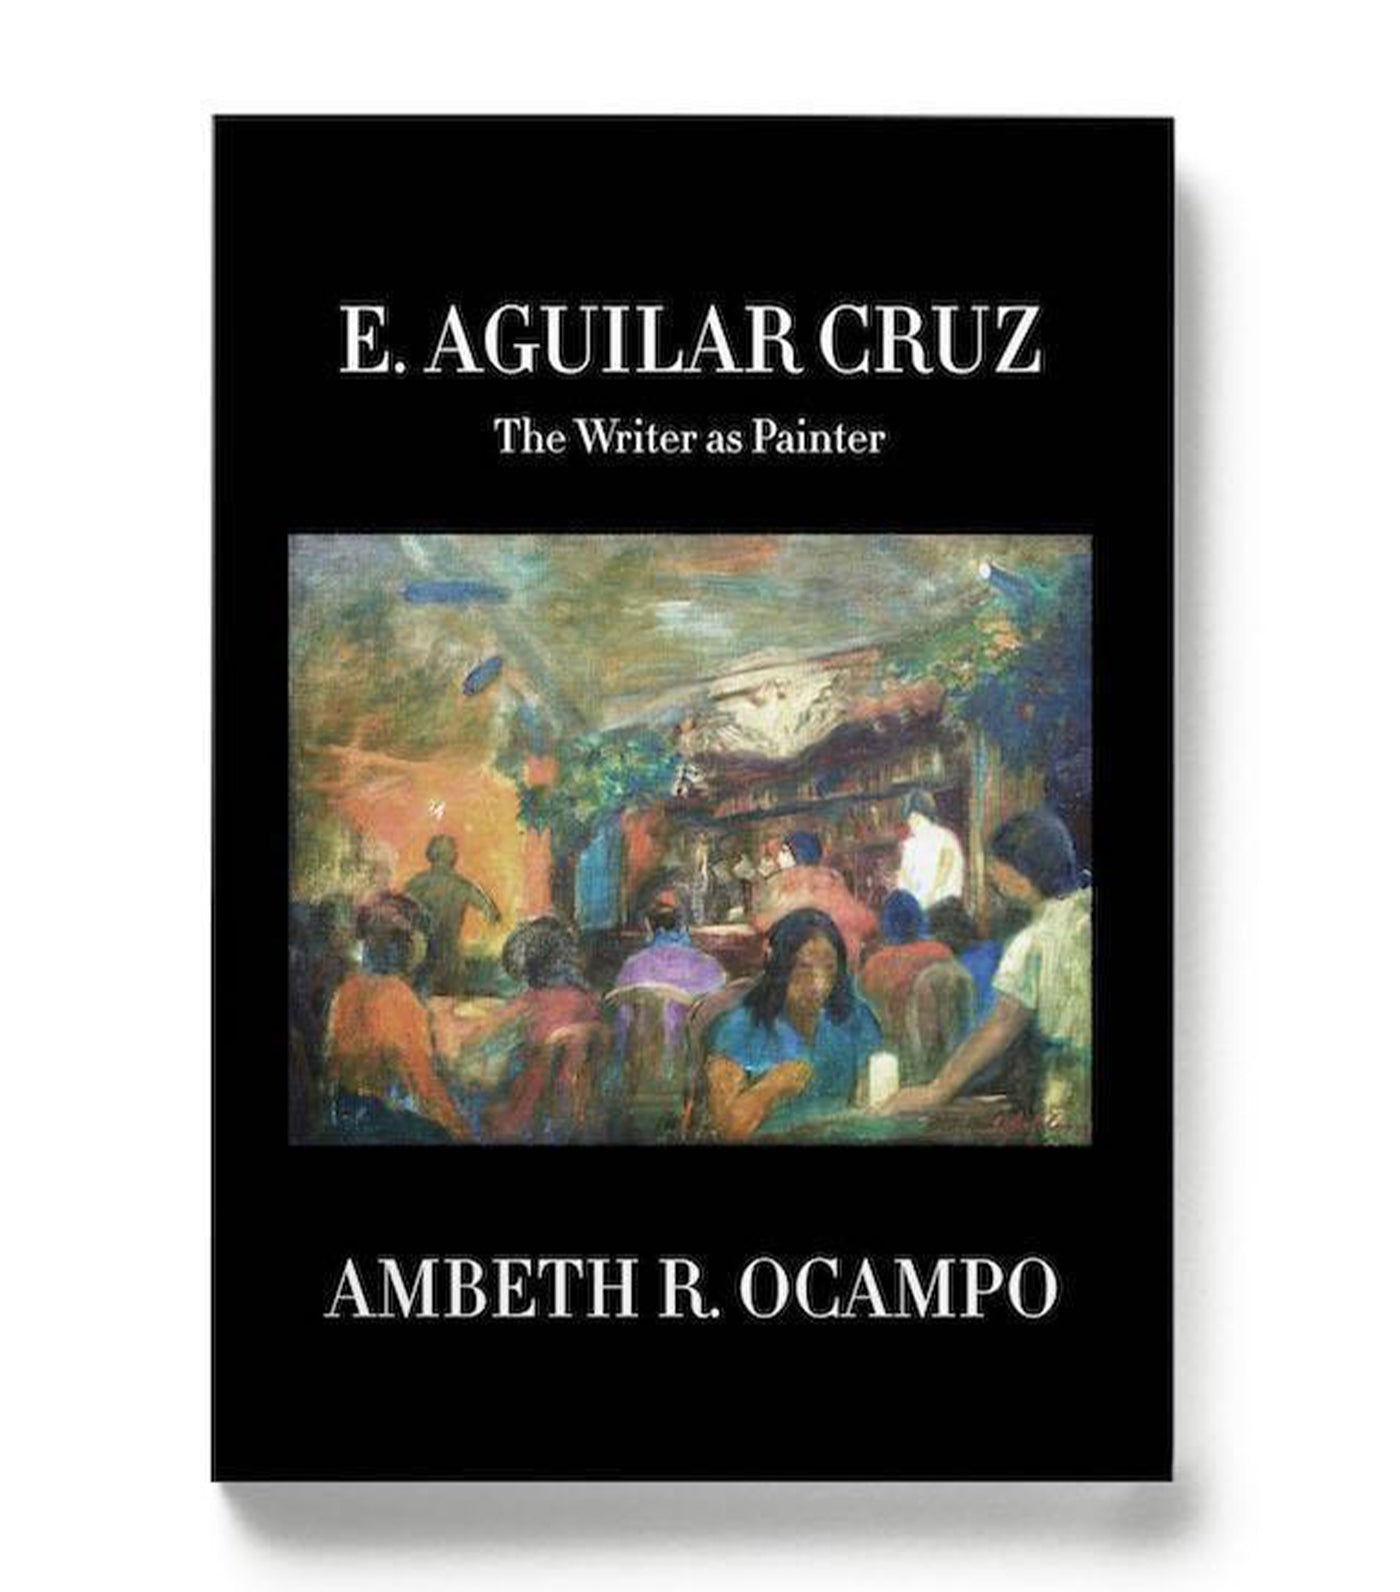 E. Aguilar Cruz: The Writer as Painter by Ambeth R. Ocampo